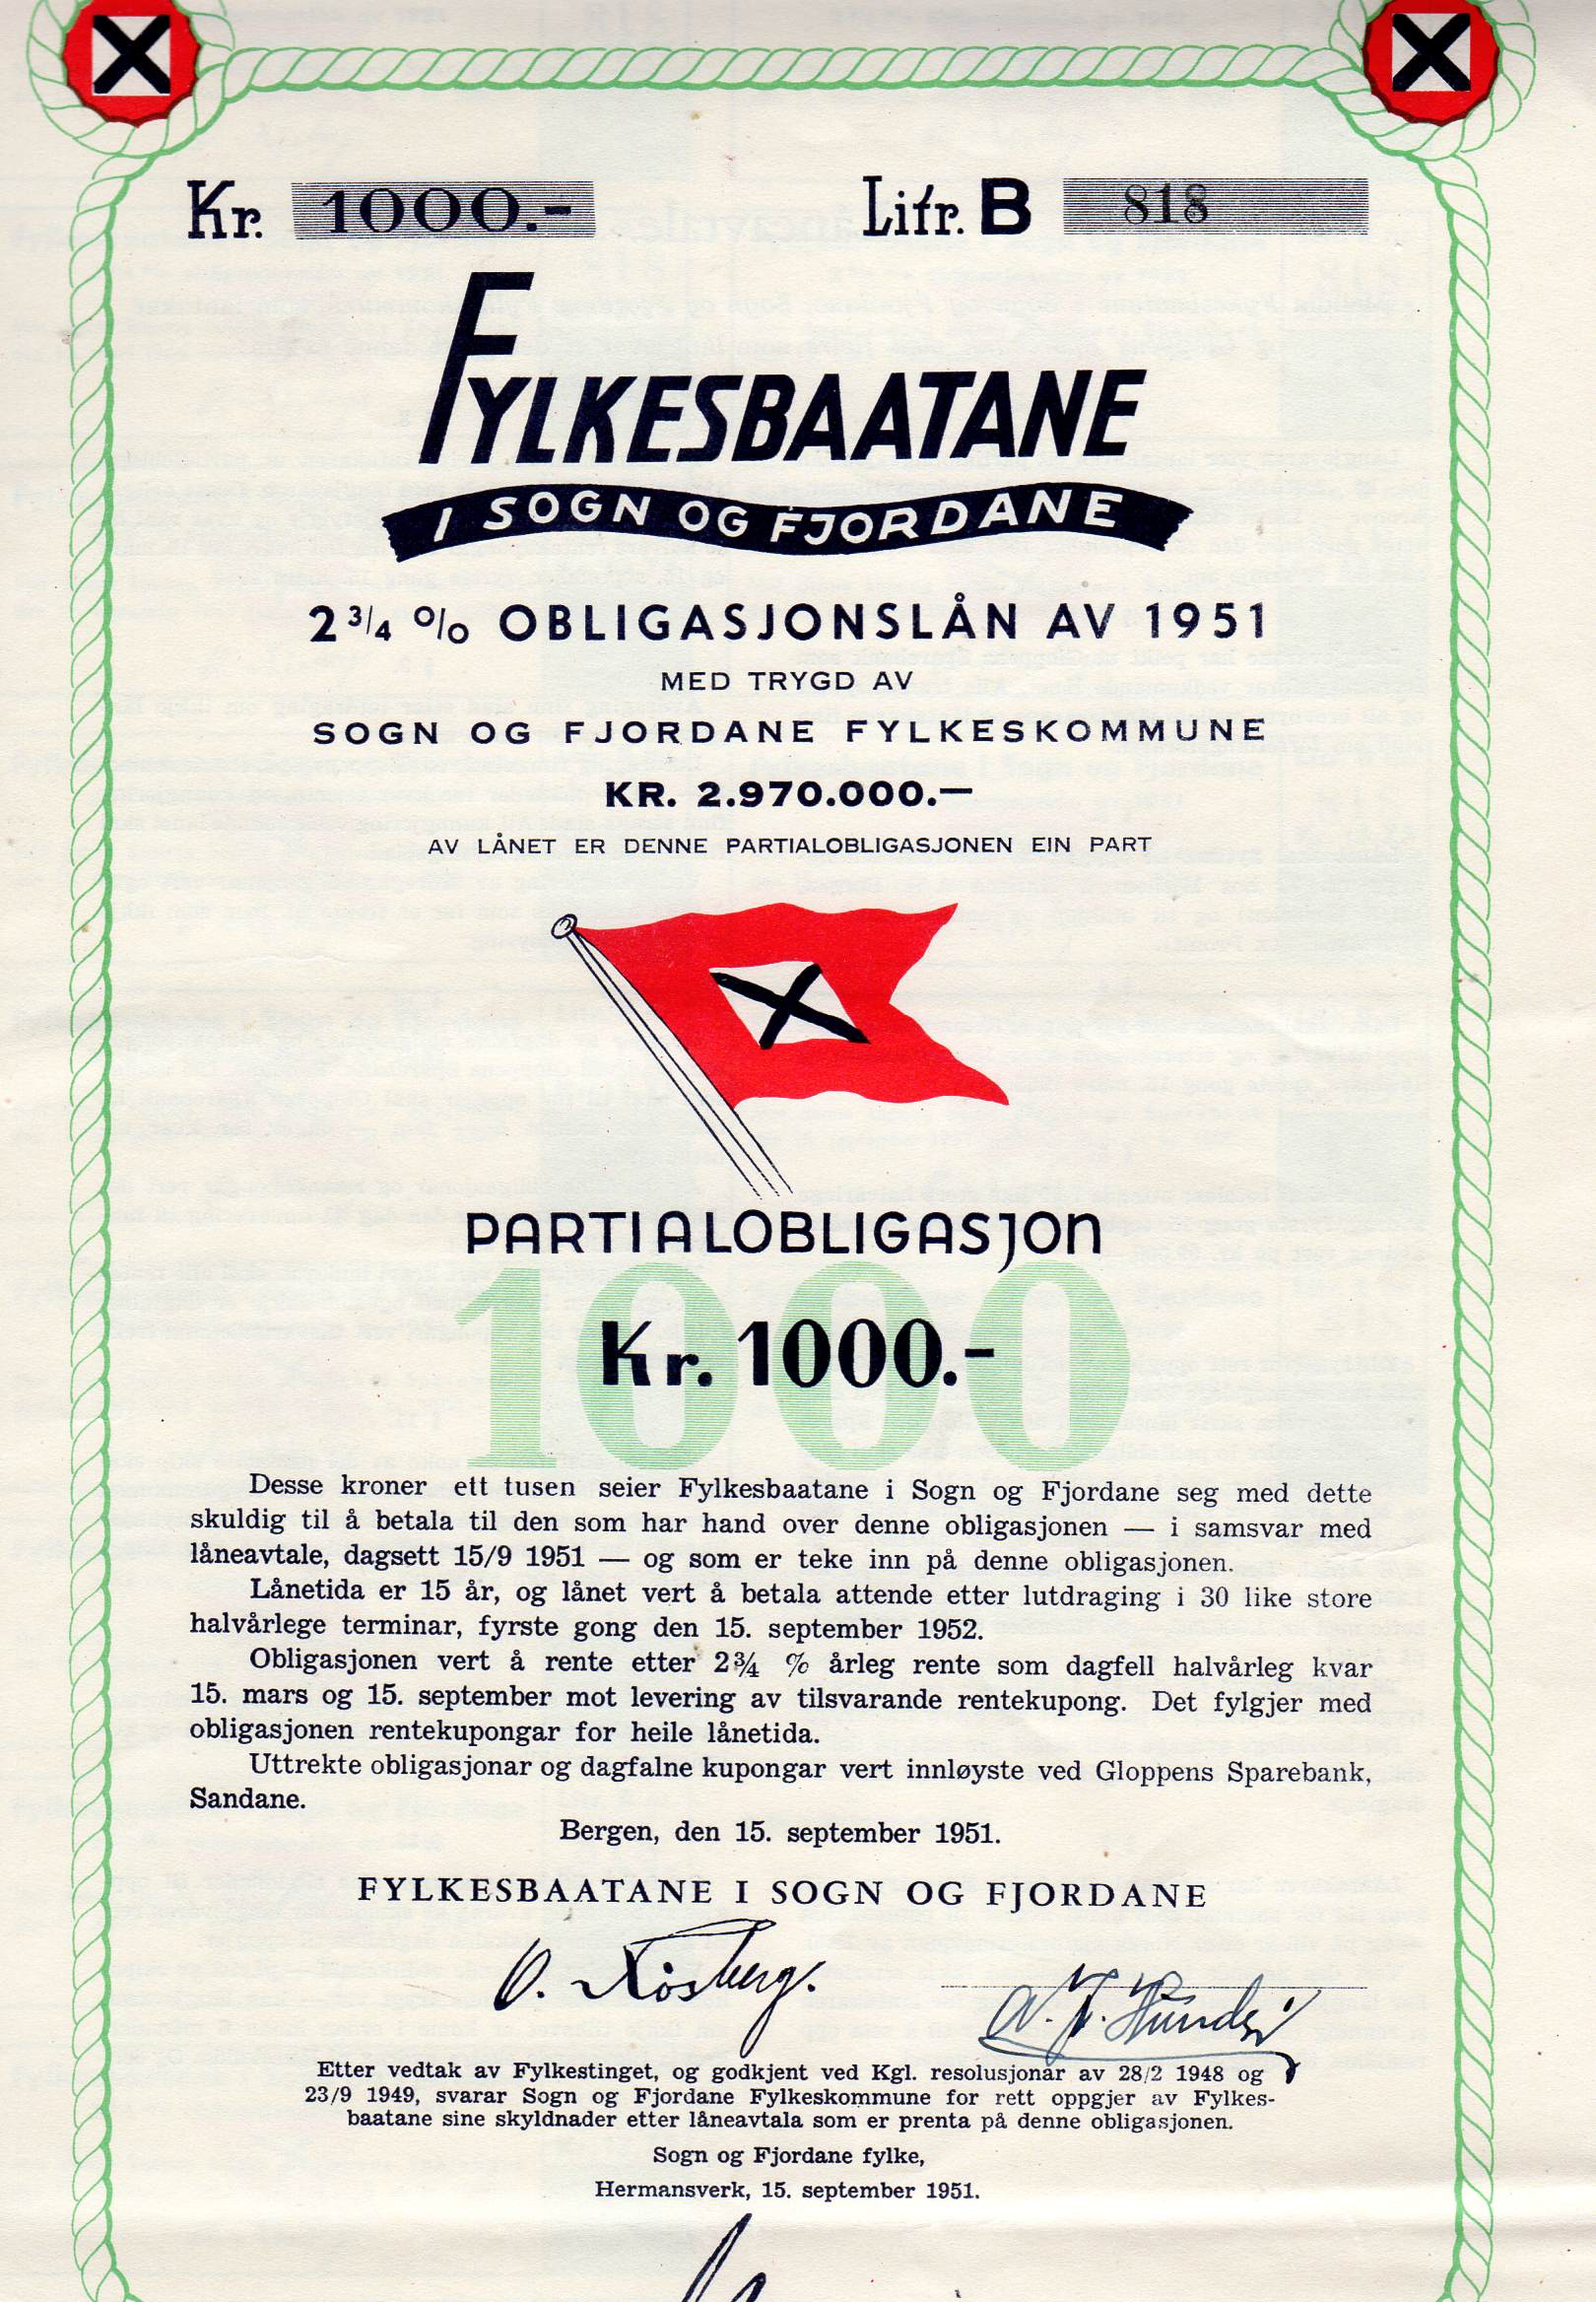 Fylkesbaatane i Sogn og fjordane 2 3/4% obligasjonslån av 1951 litra B kr 1000 nr 818